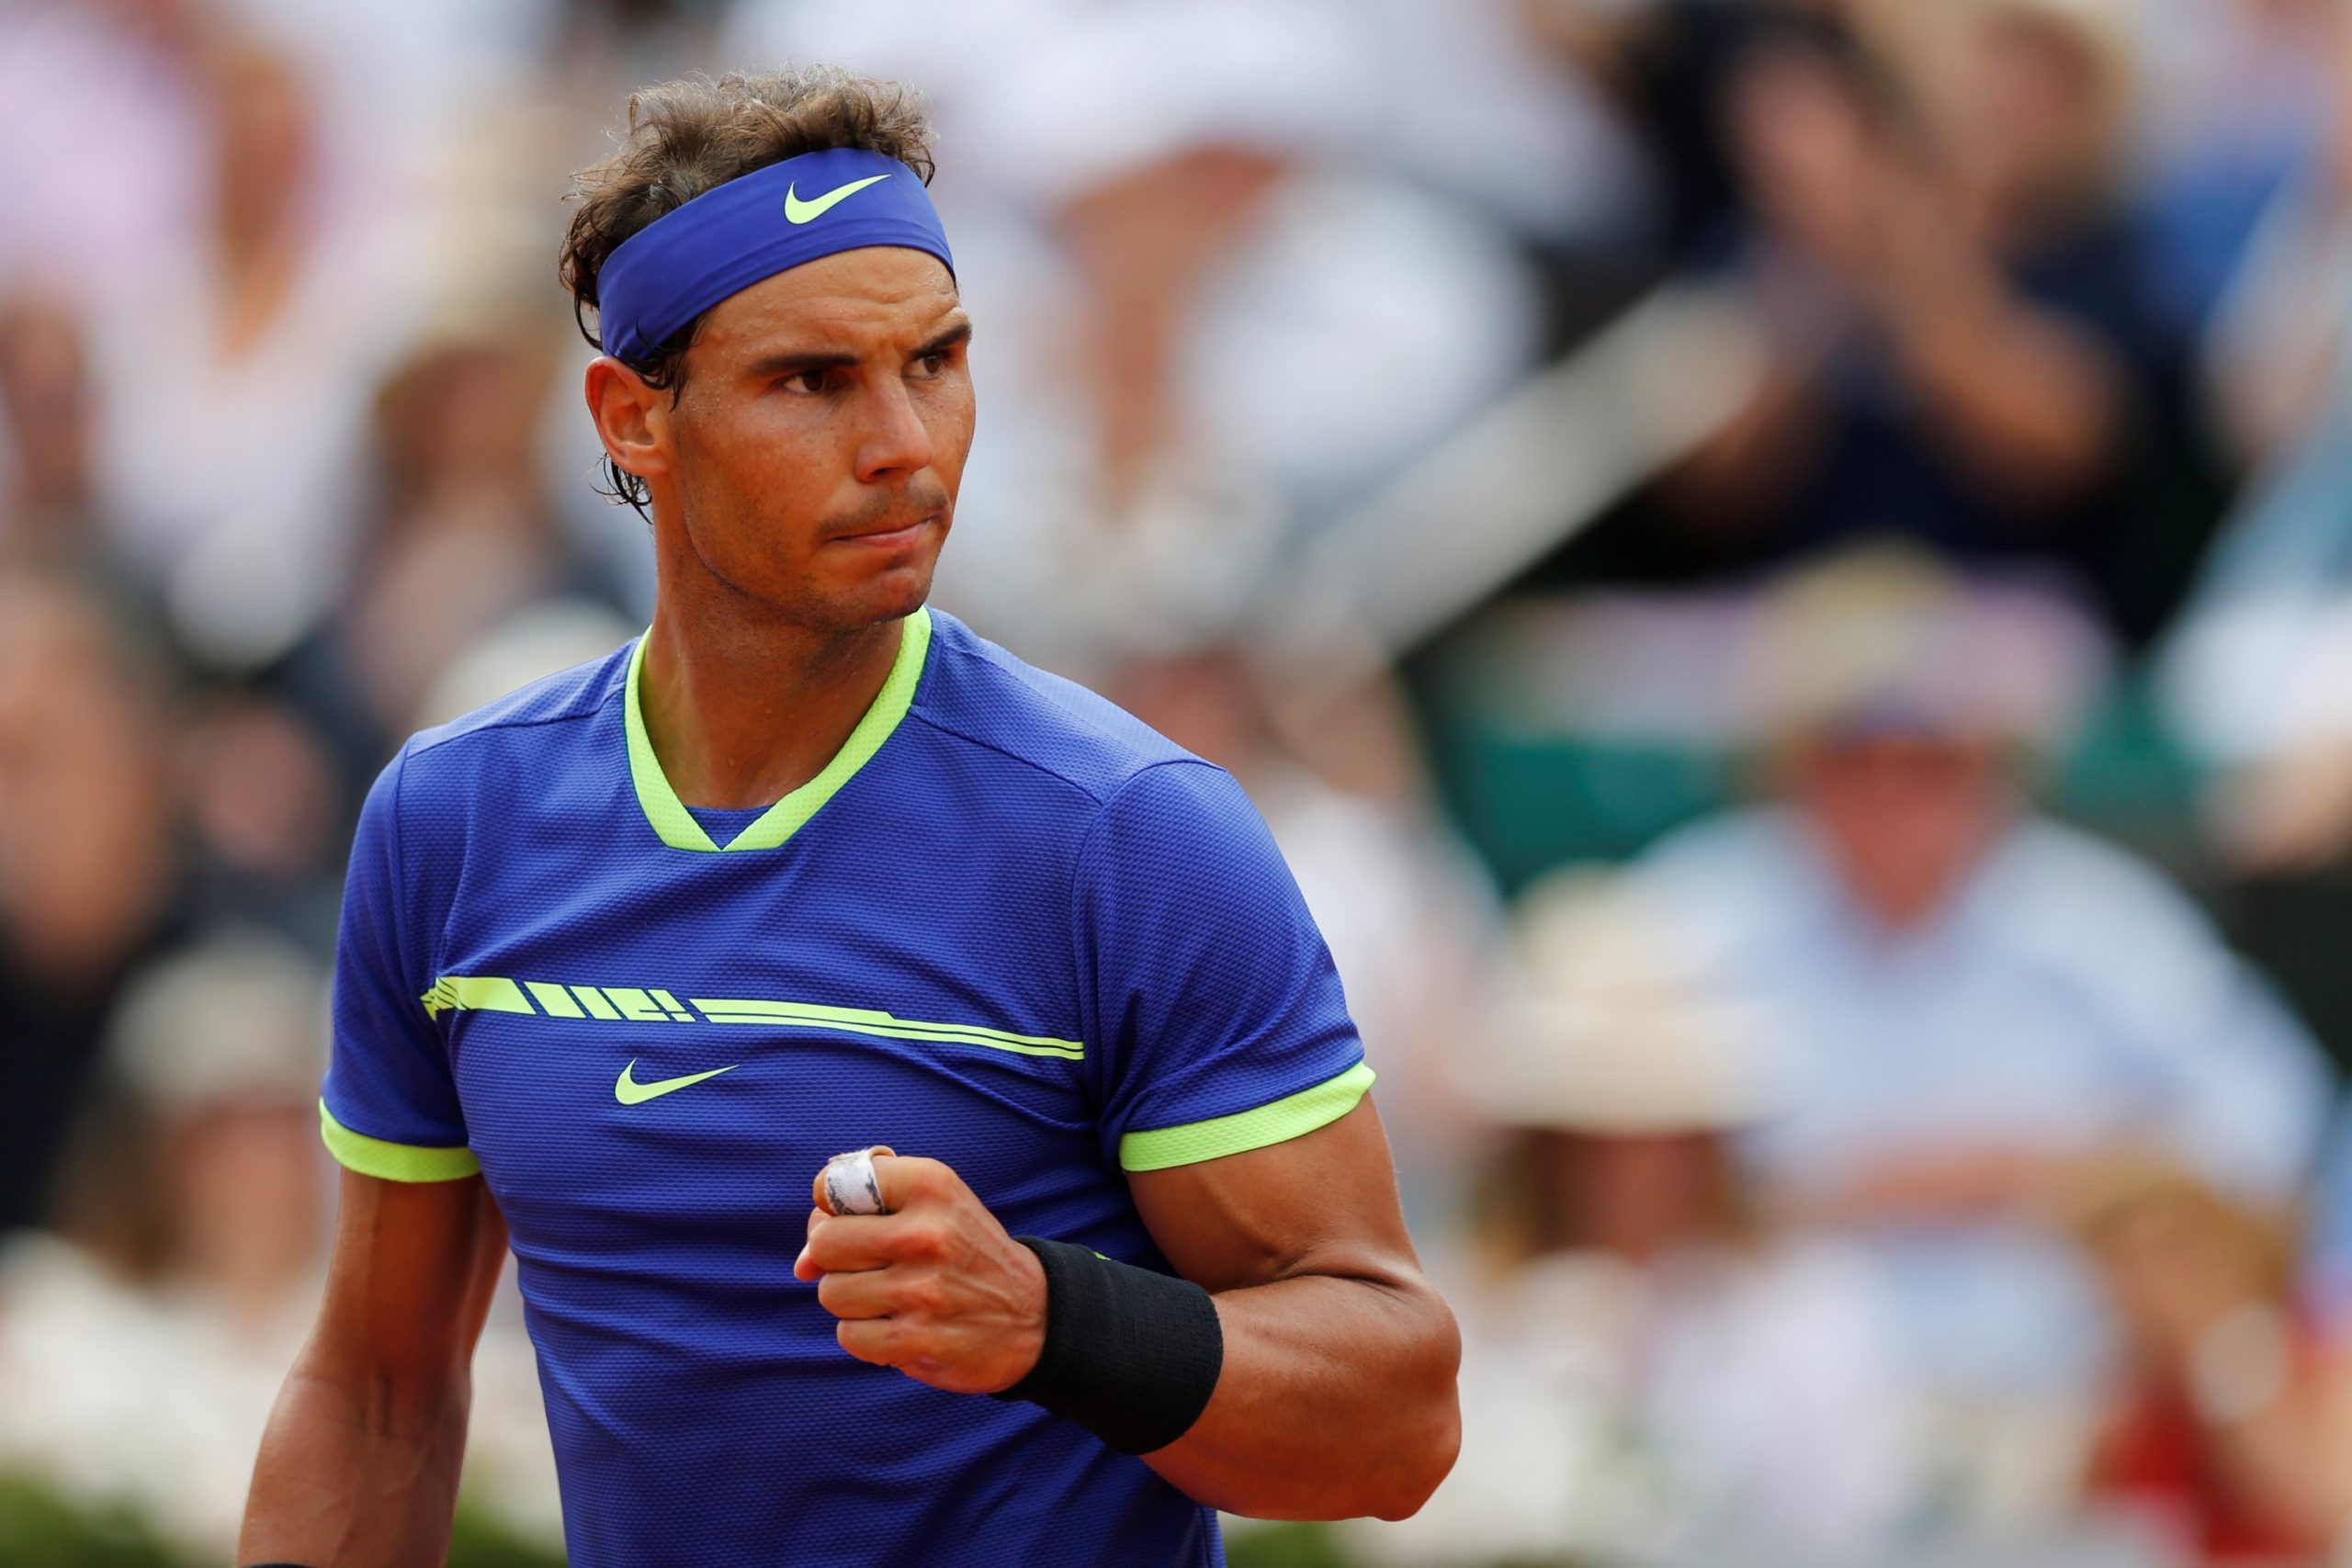 5 records Rafael Nadal can break in 2020